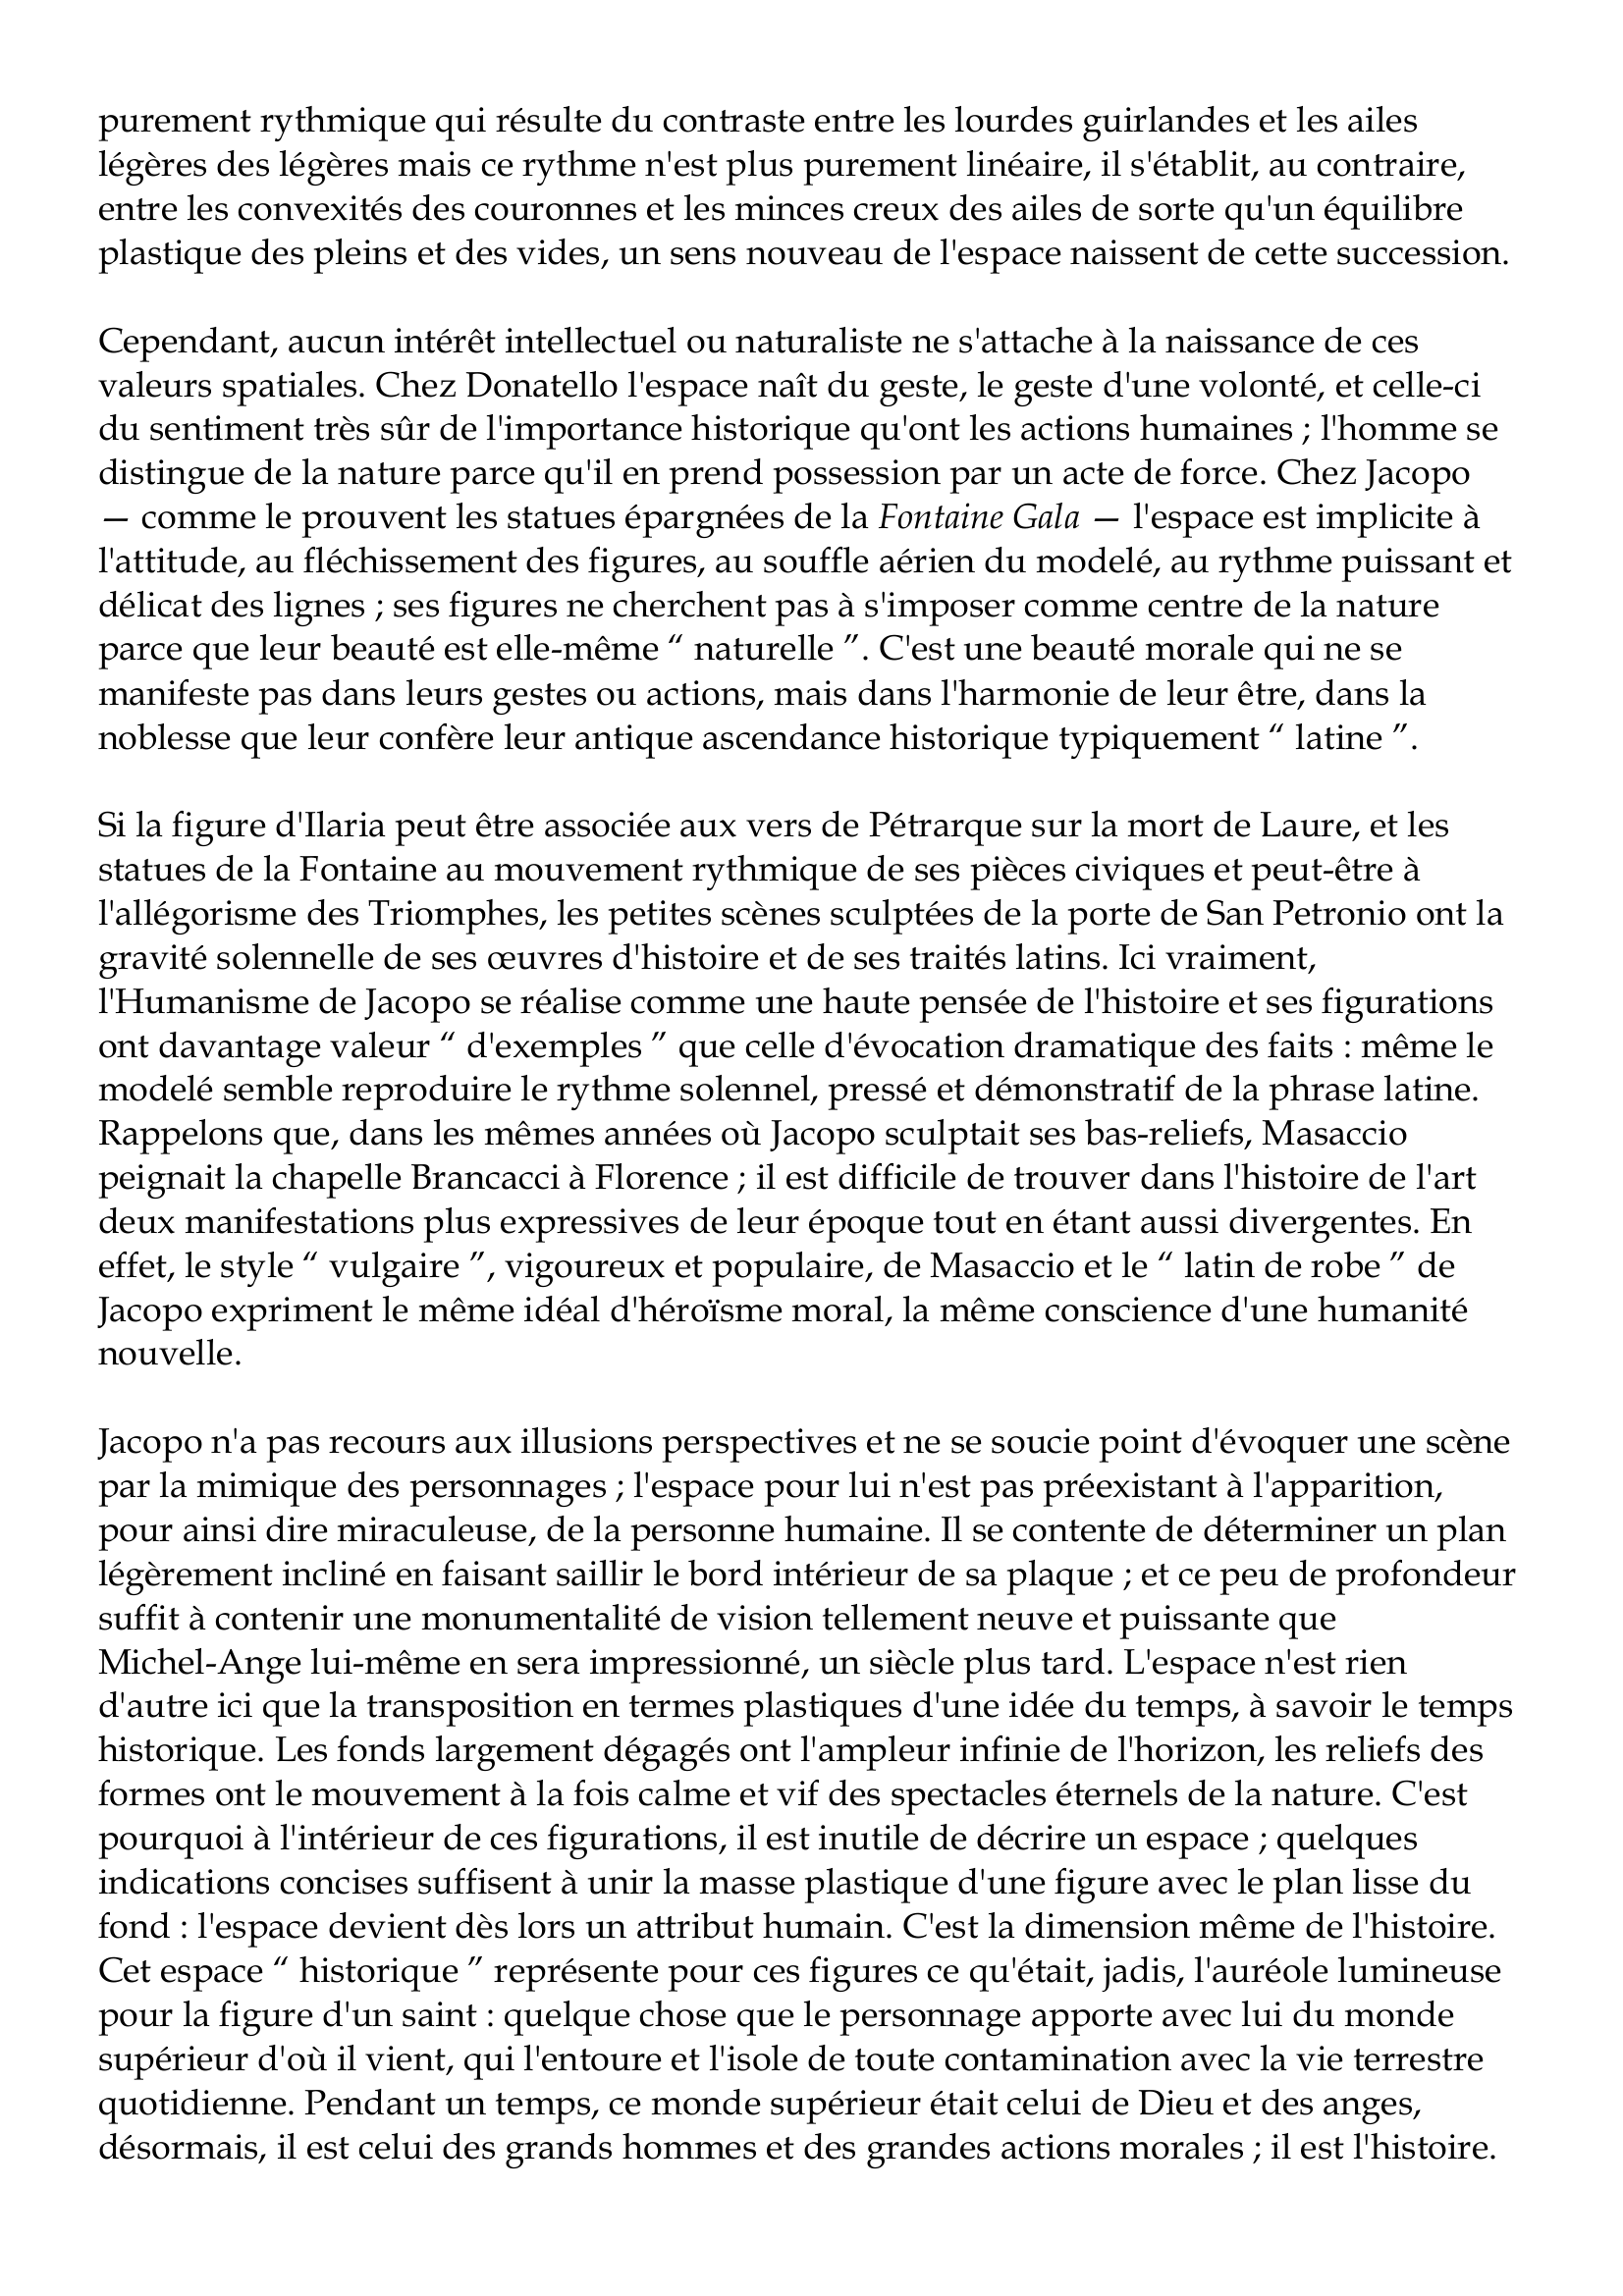 Prévisualisation du document Jacopo della Quercia
vers 1374-1438
Jacopo della Quercia, fils de Pietro d'Angelo, orfèvre et sculpteur, naquit à Sienne ou dans
le voisinage, vers 1374.